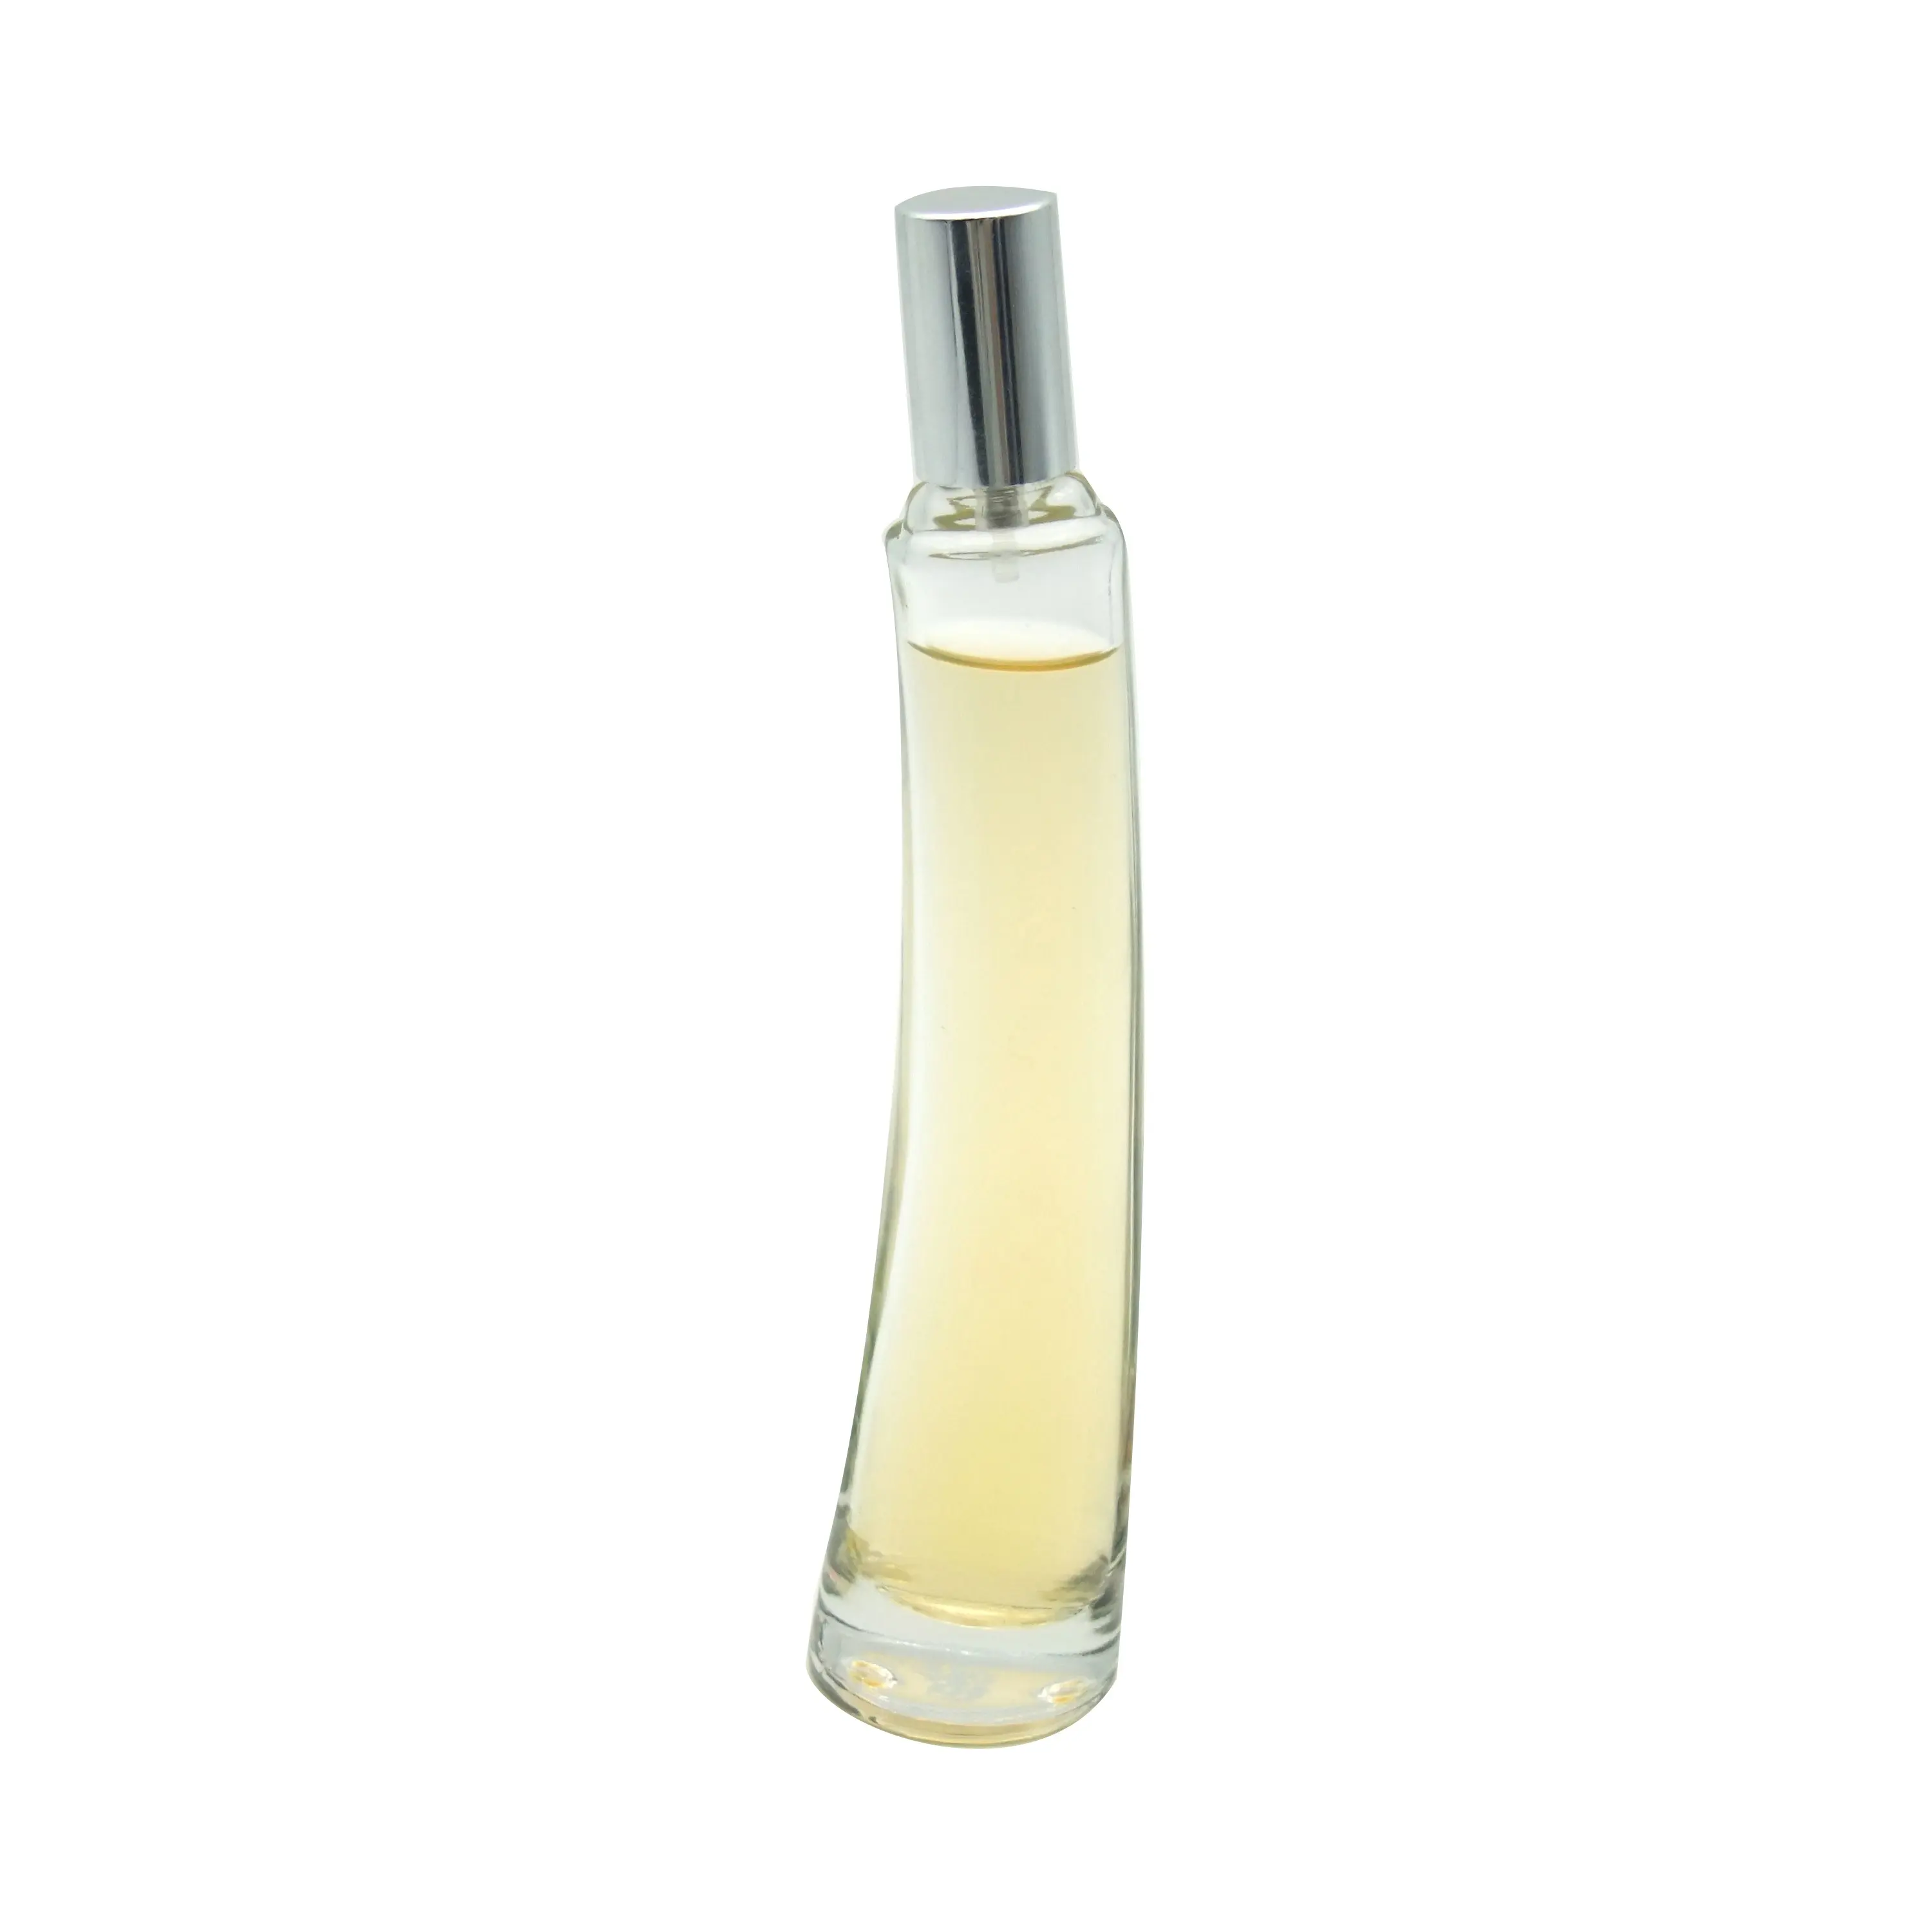 Botella de vidrio para perfume, pulverizador, haodexina, con tapa